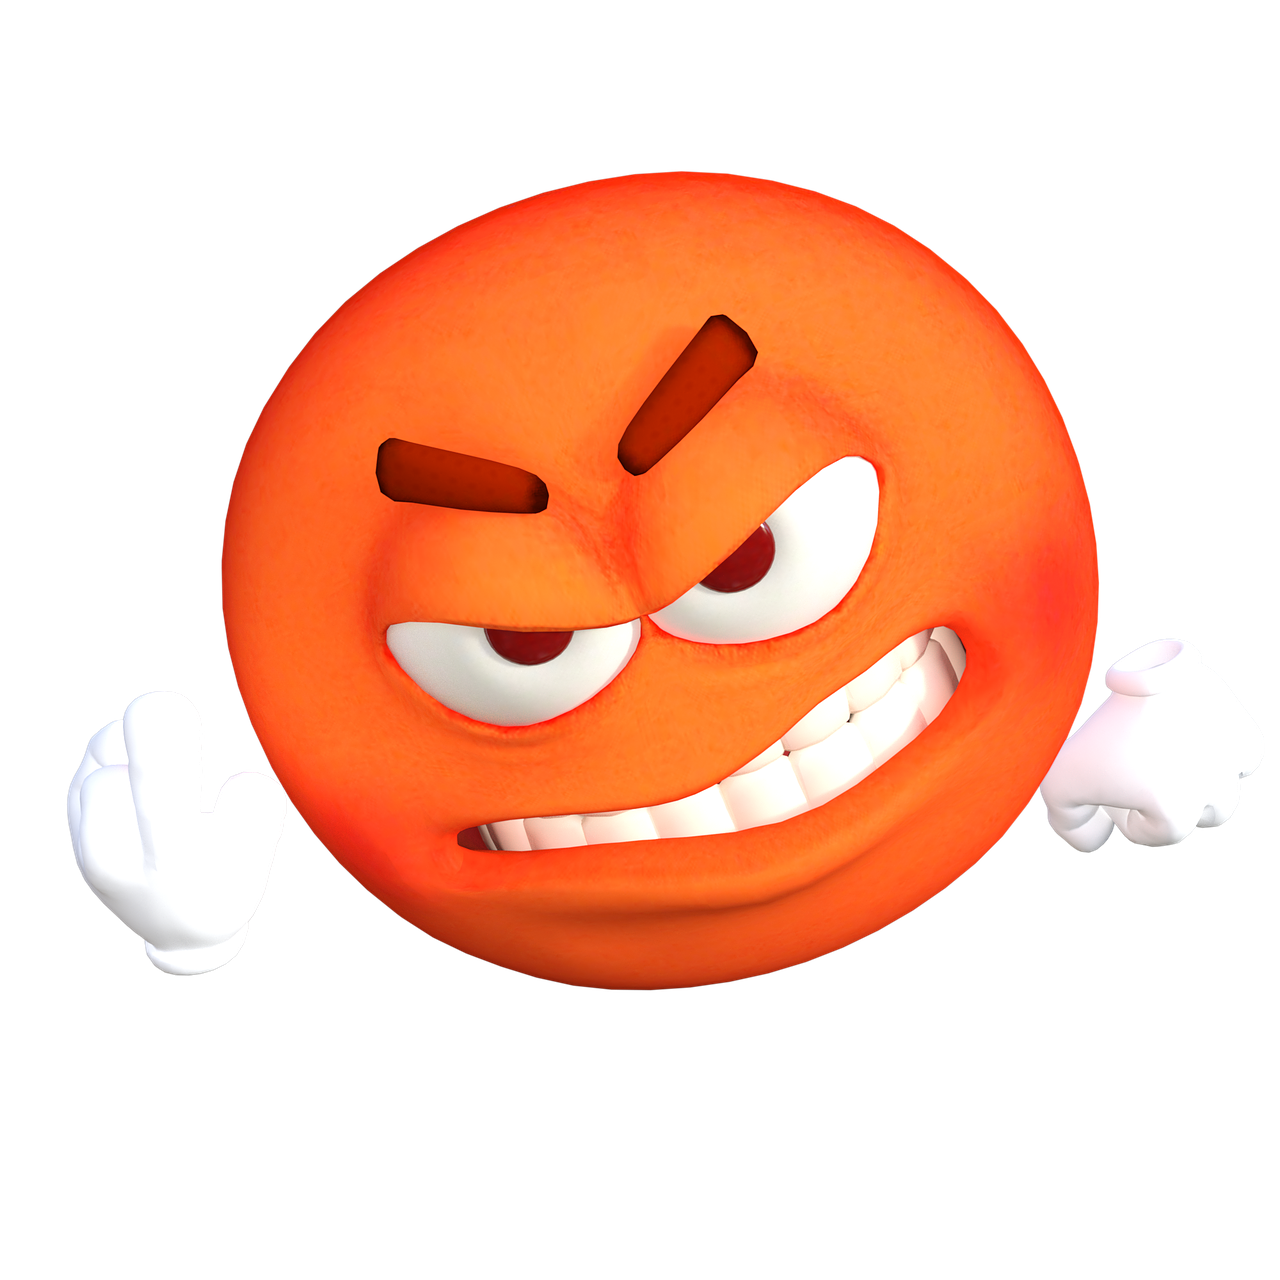 Red marah menangis emoji PNG image